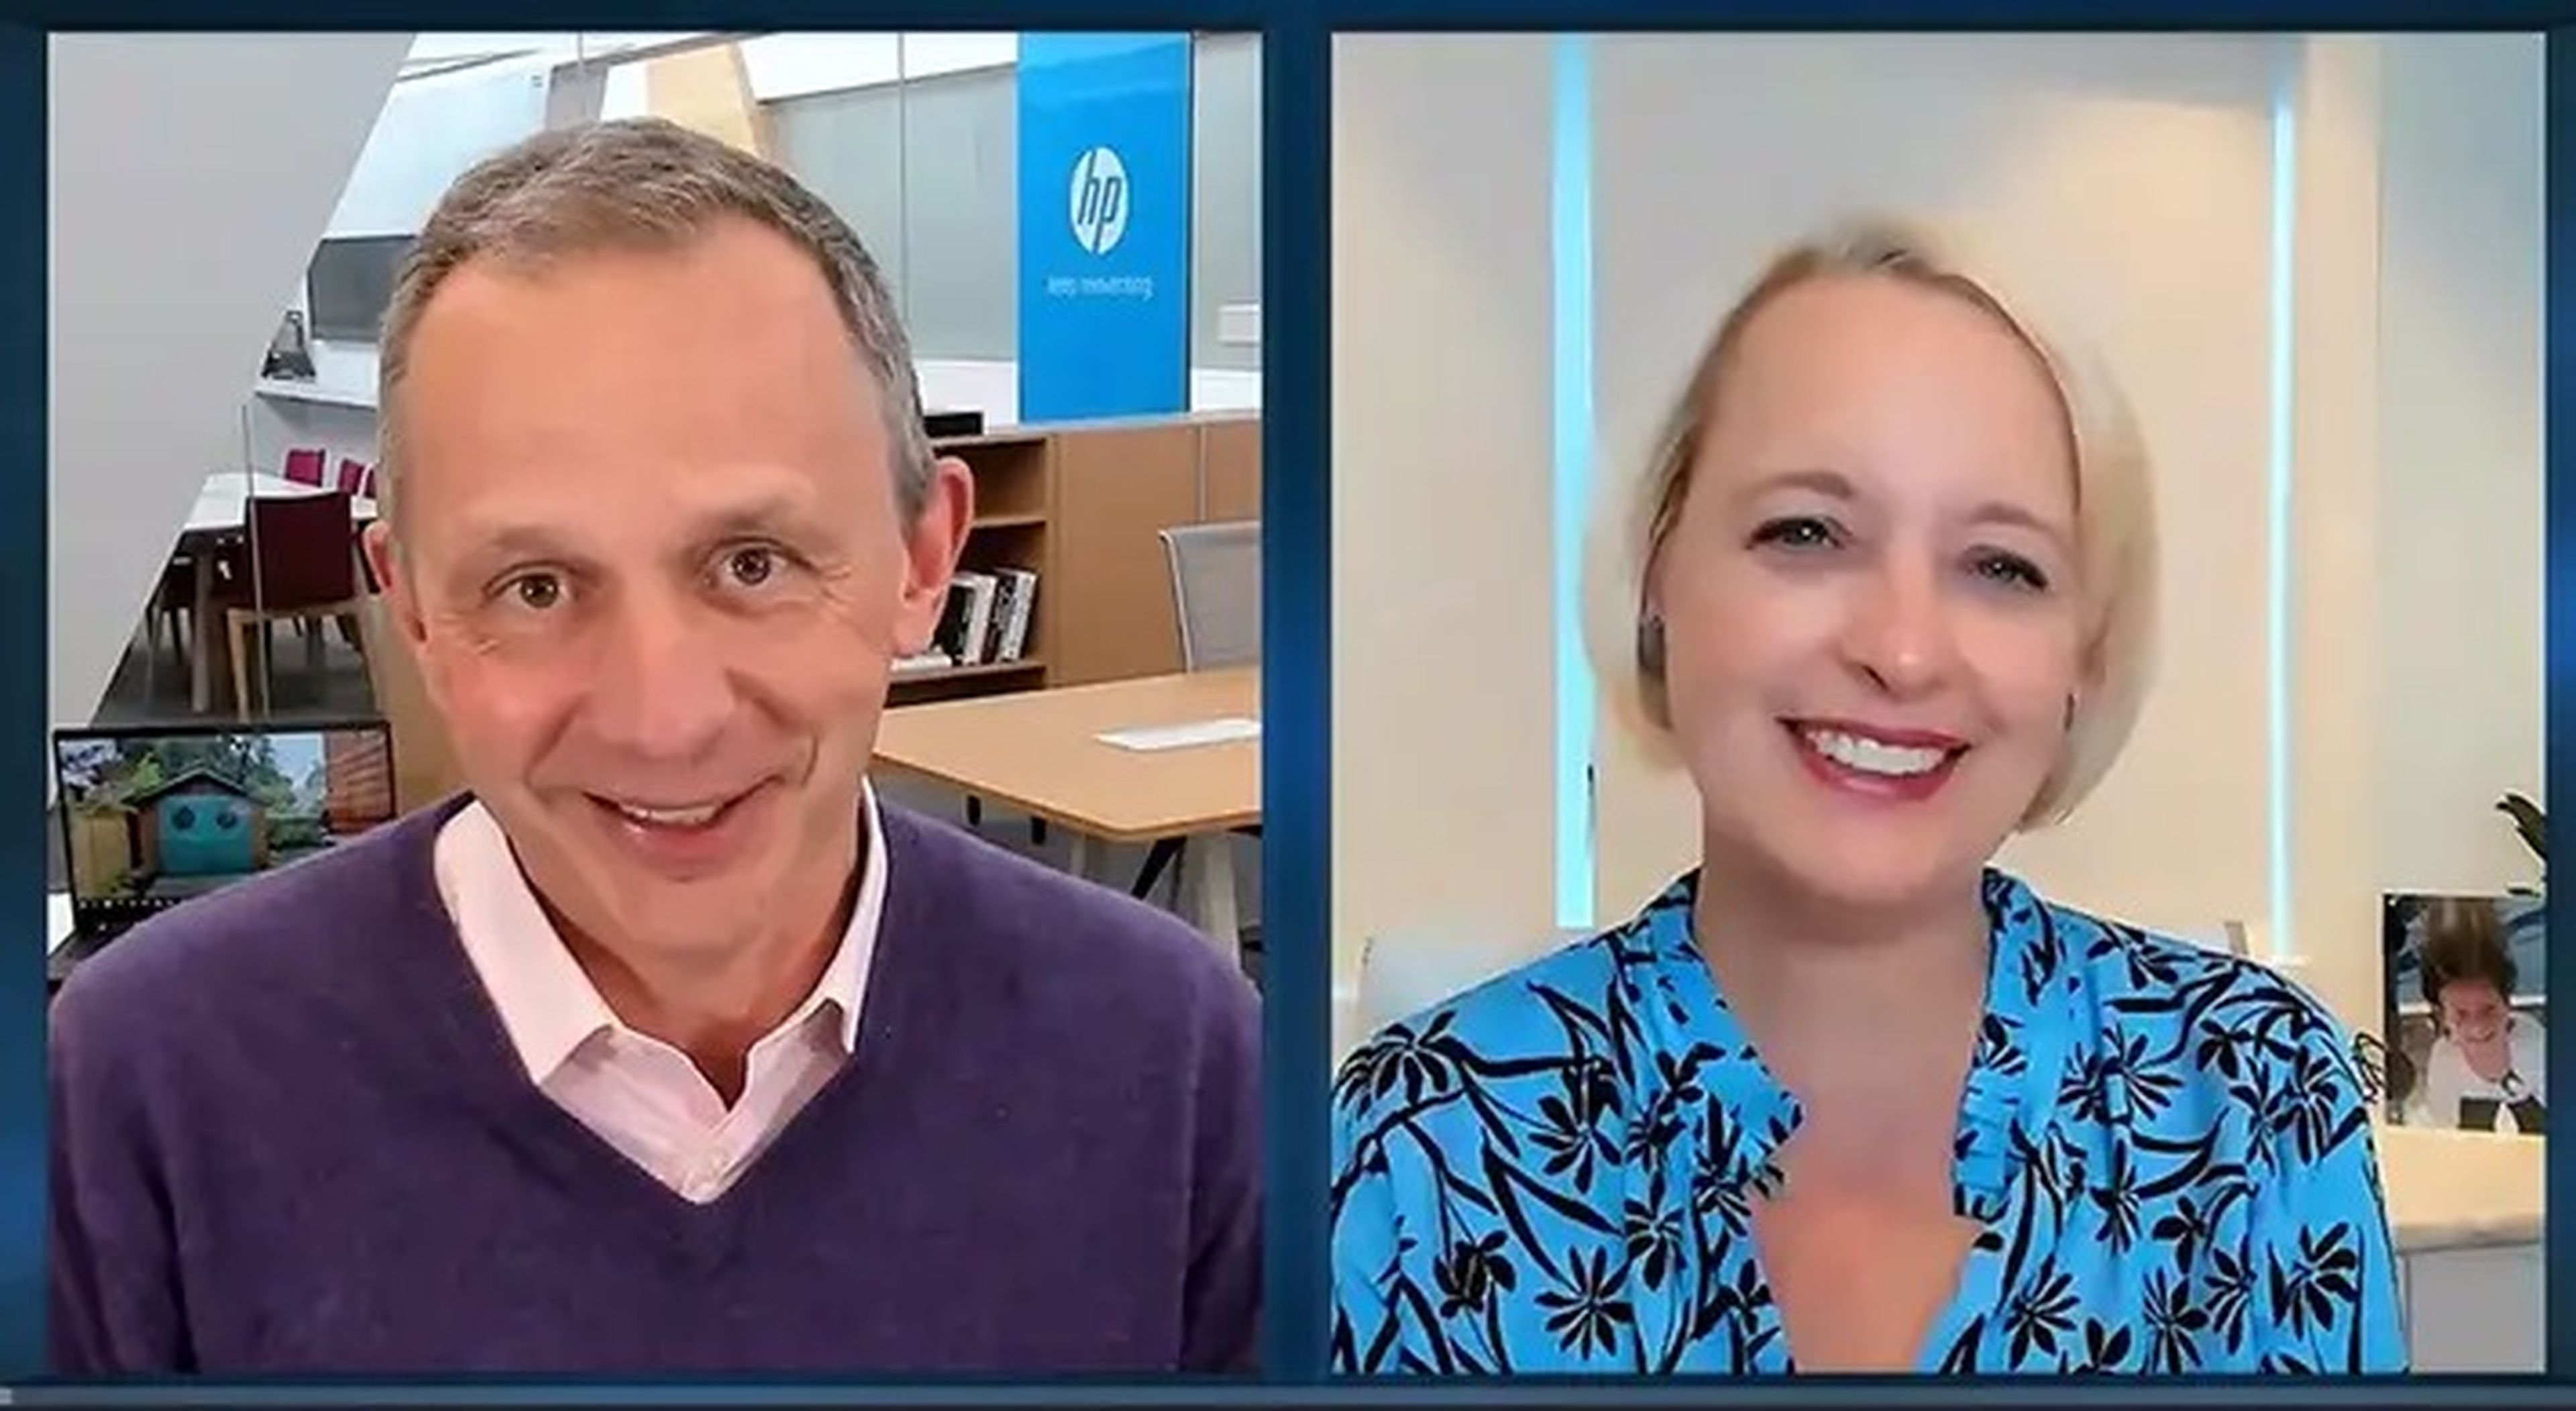 Enrique Lores, director ejecutivo de HP, y Julie Sweet, directora ejecutiva de Accenture, hablan sobre transformación digital.